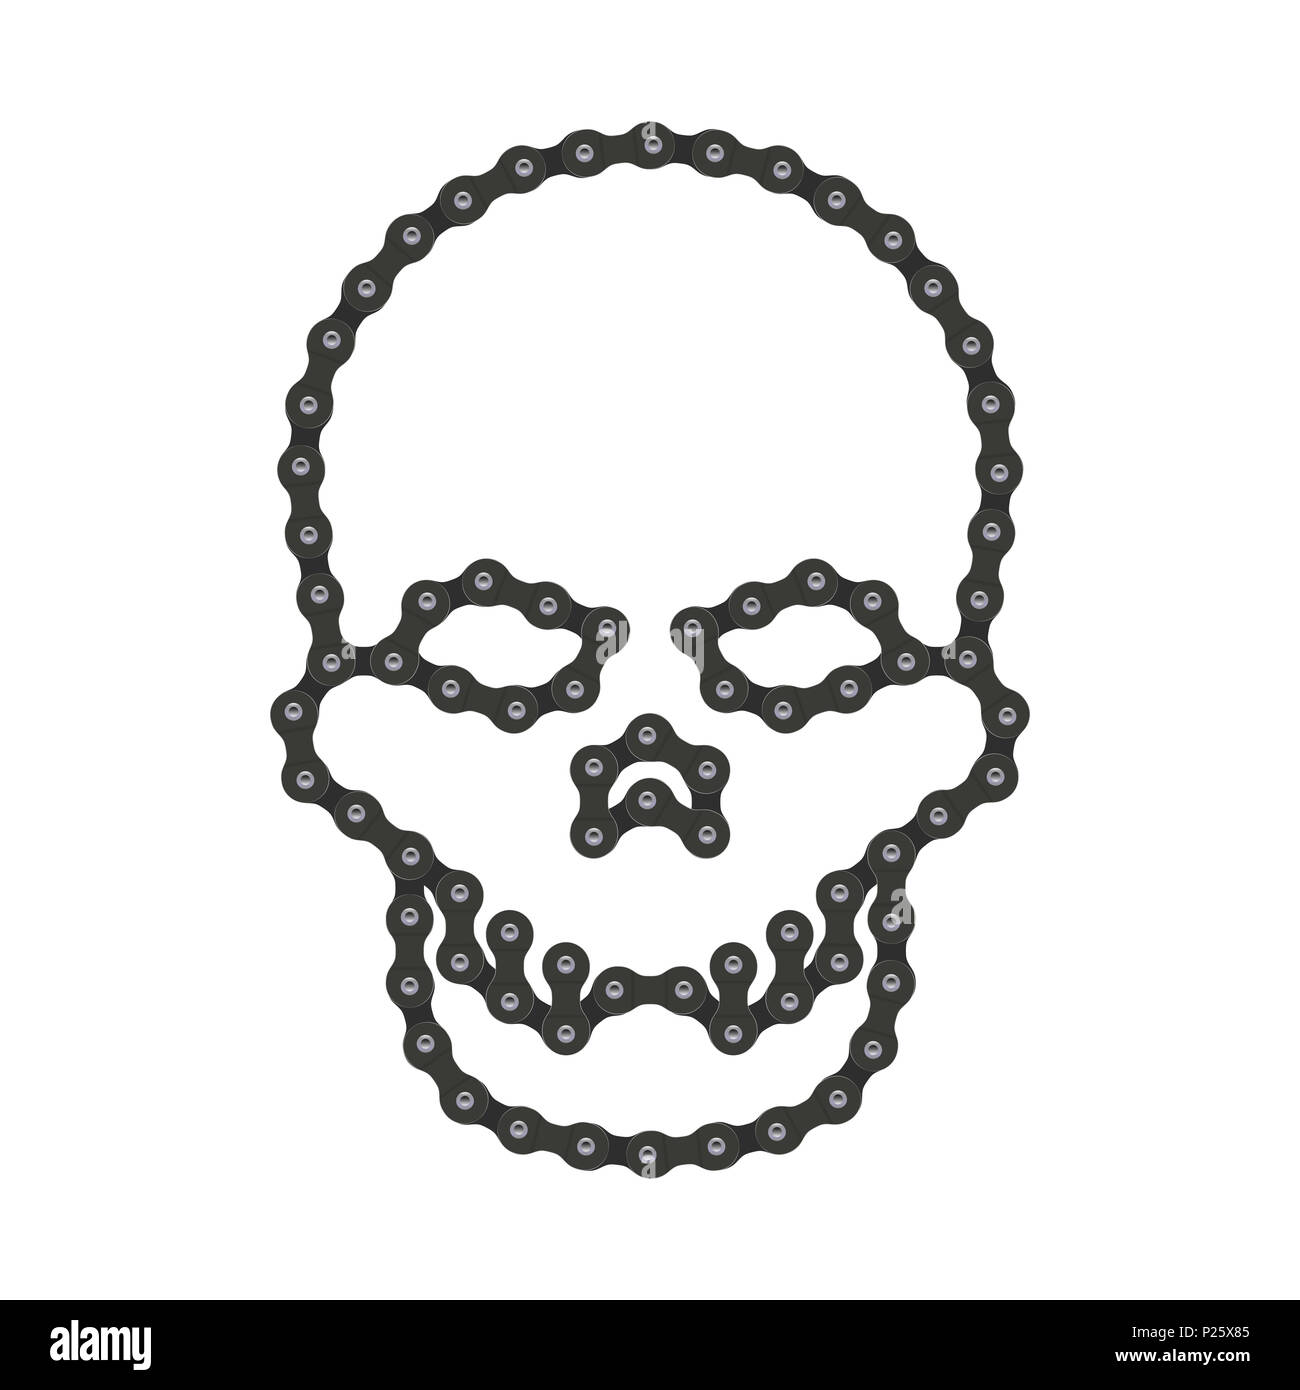 Menschlichen Schädel aus Bike oder Fahrrad Kette. Schädel oder Death Head Symbol. Hi-Detailed Fahrradkette. Realistische Grafik für Grafik Design, Web Bann Stockfoto